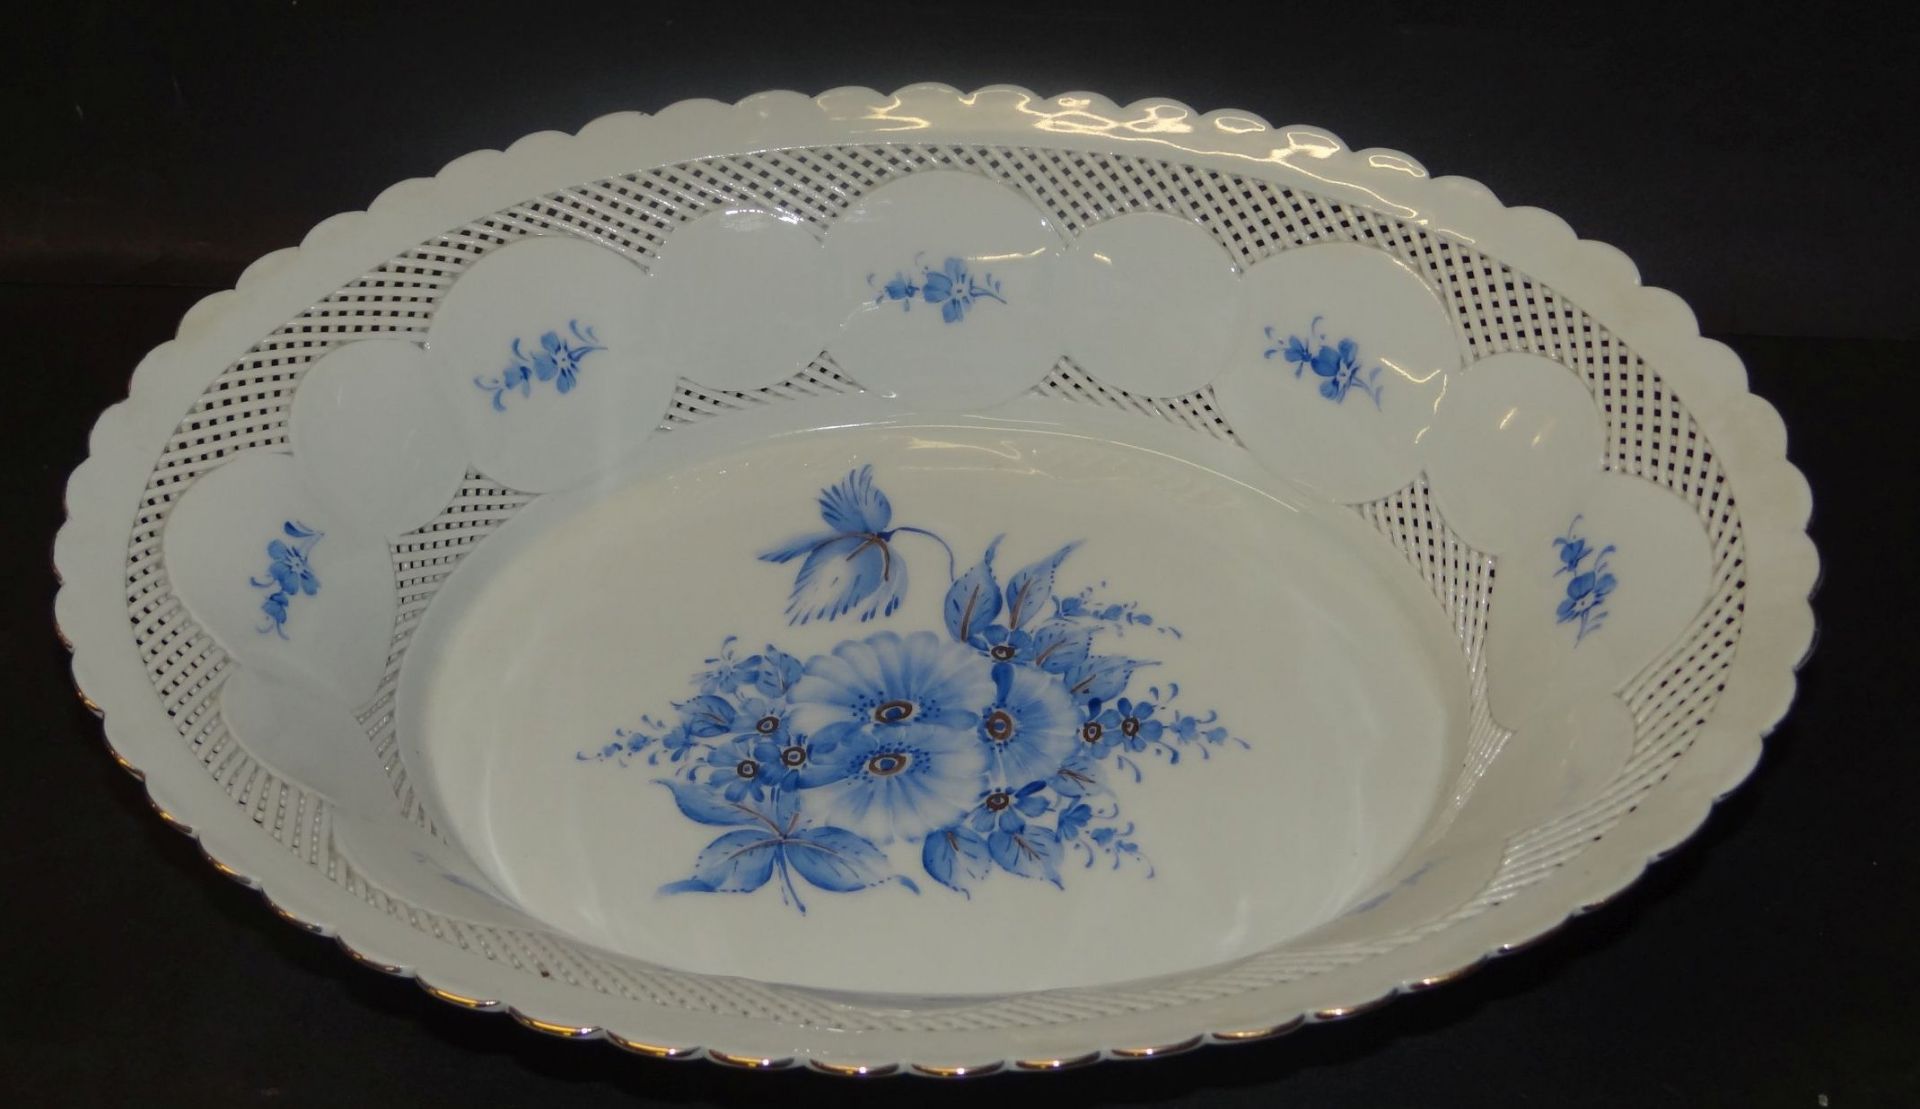 grosse, ovale Porzellanschale, blaue Blumen und Durchbruch-Wandung, H-6,5 cm, 23x31 cm